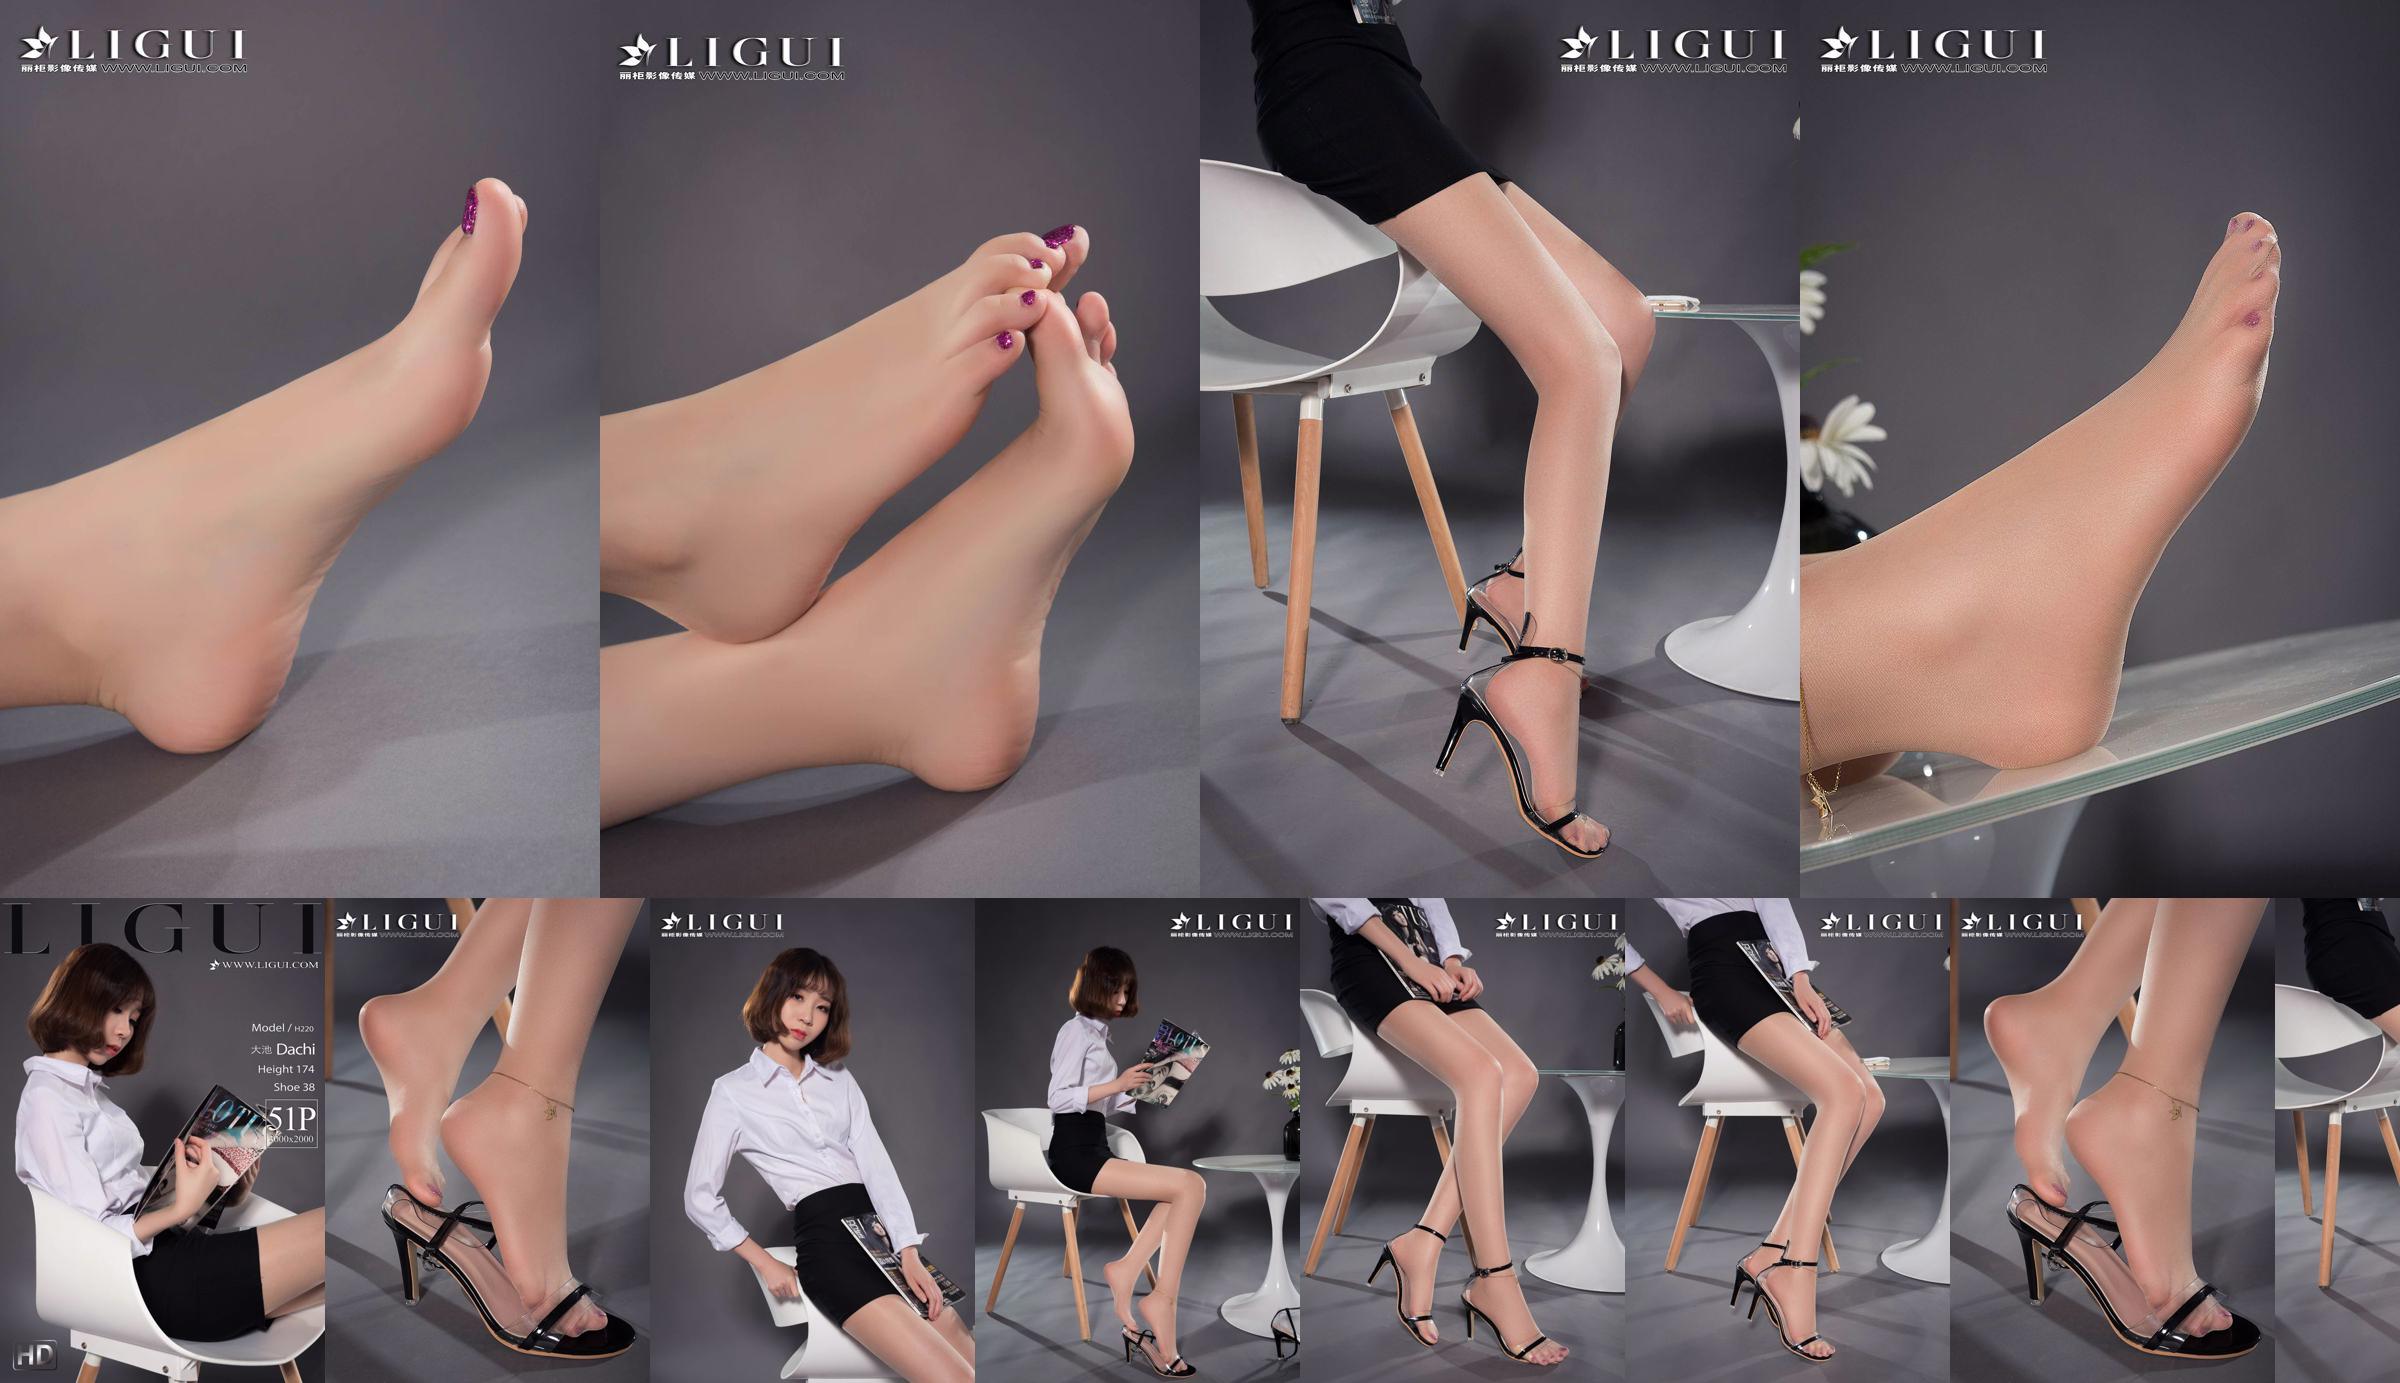 Người mẫu chân Oike "Heo với giày cao gót CV" [Ligui Ligui] Vẻ đẹp Internet No.be200f Trang 1